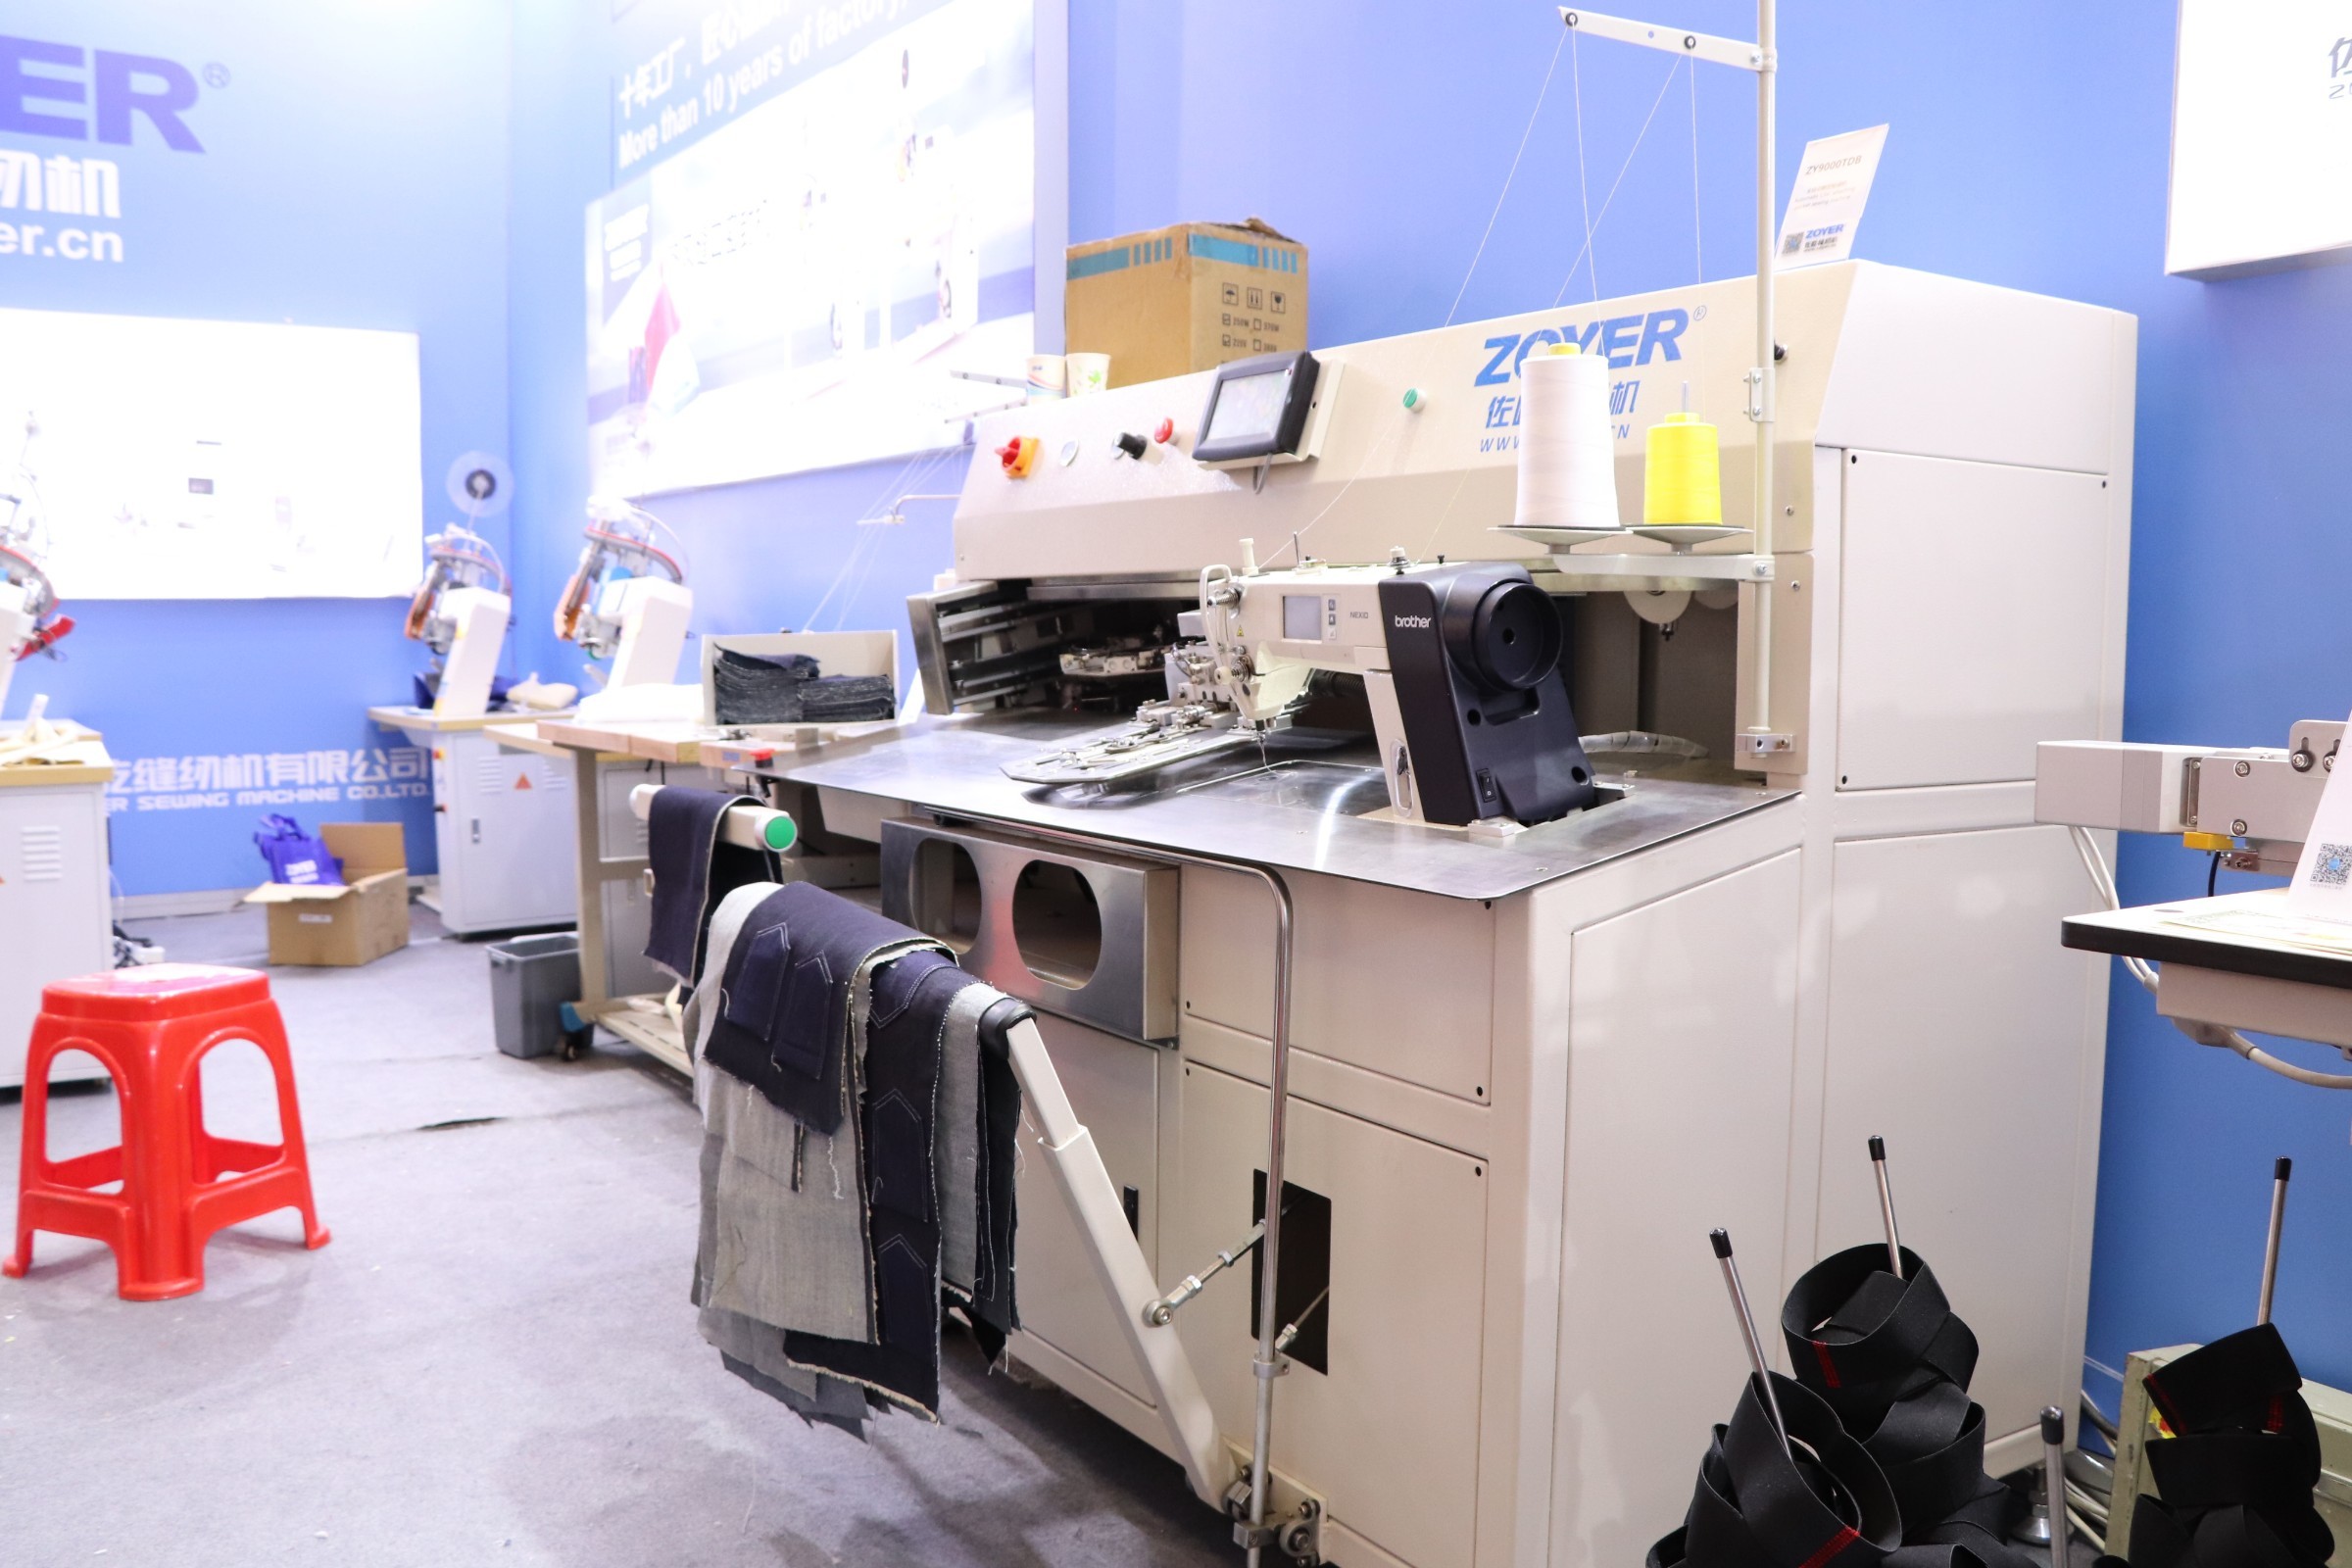 ZY9000TDB Máquina de coser de bolsillo de fijación CNC automática